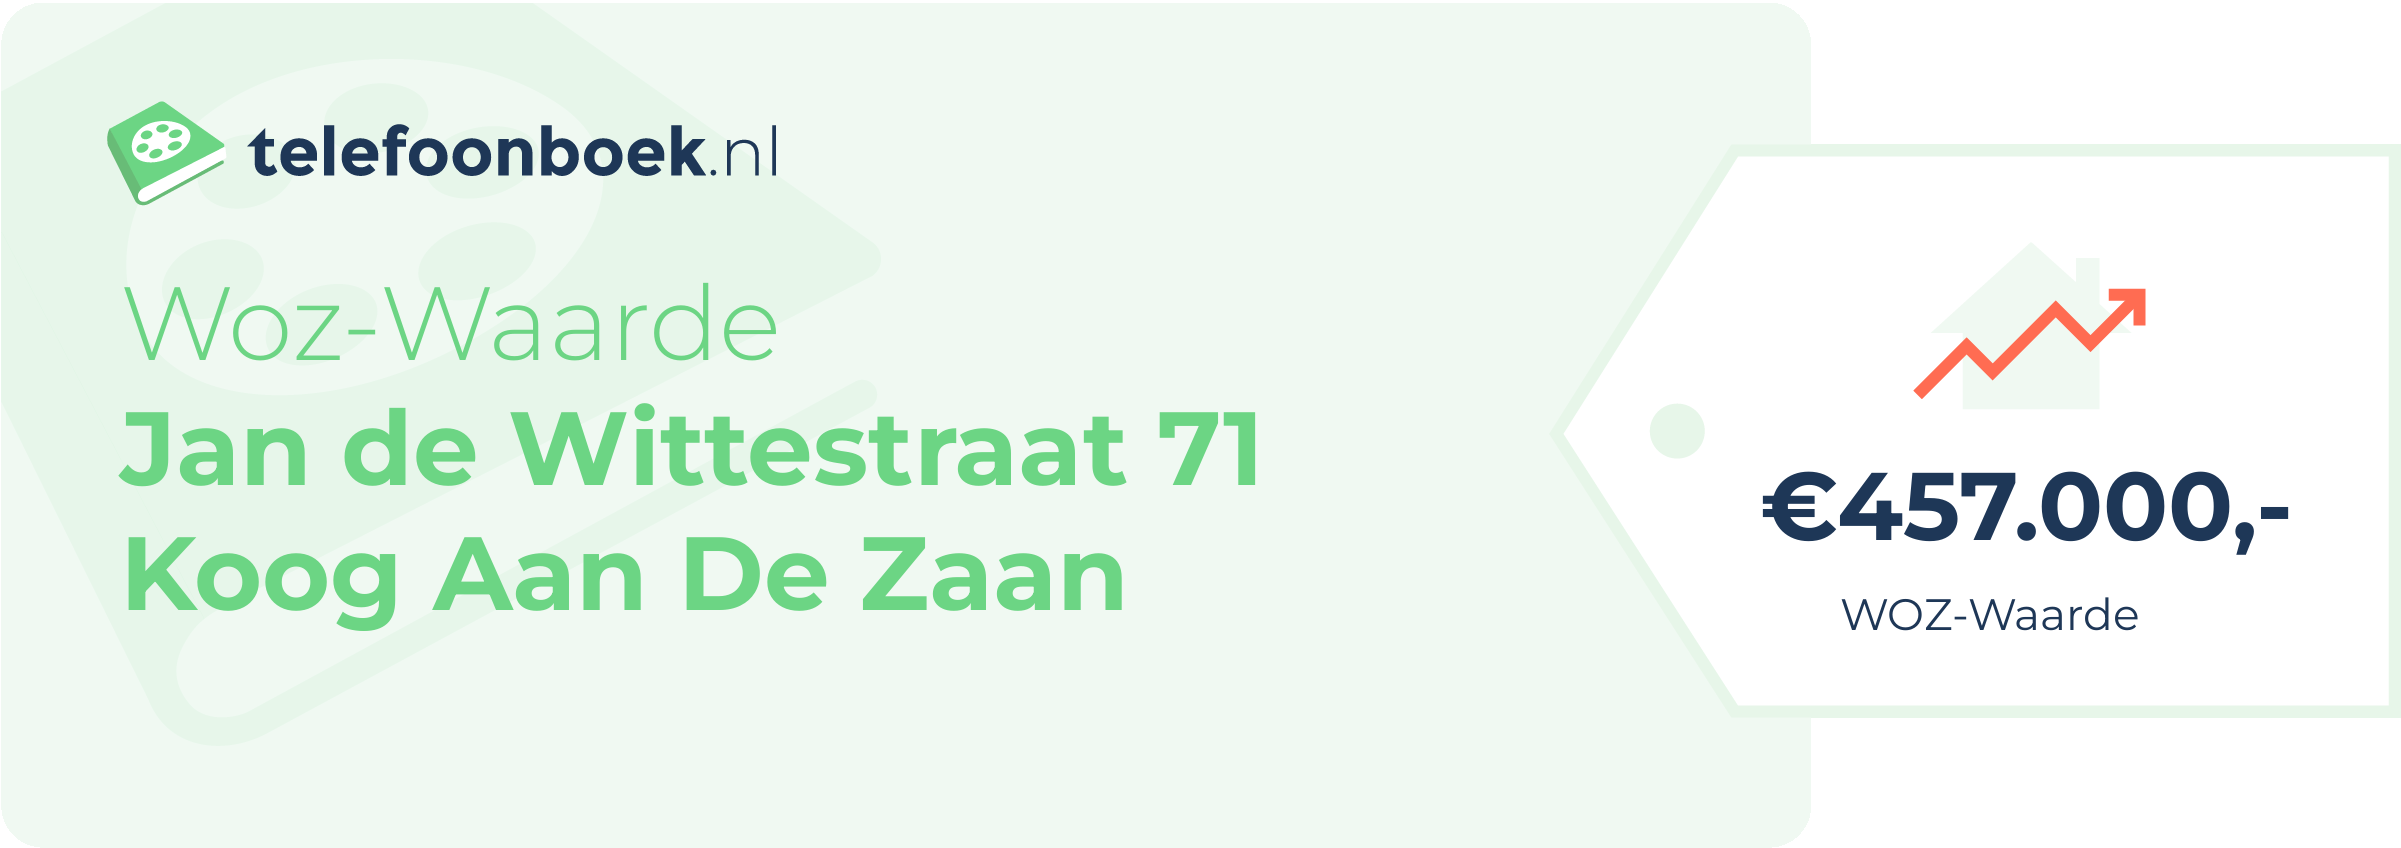 WOZ-waarde Jan De Wittestraat 71 Koog Aan De Zaan